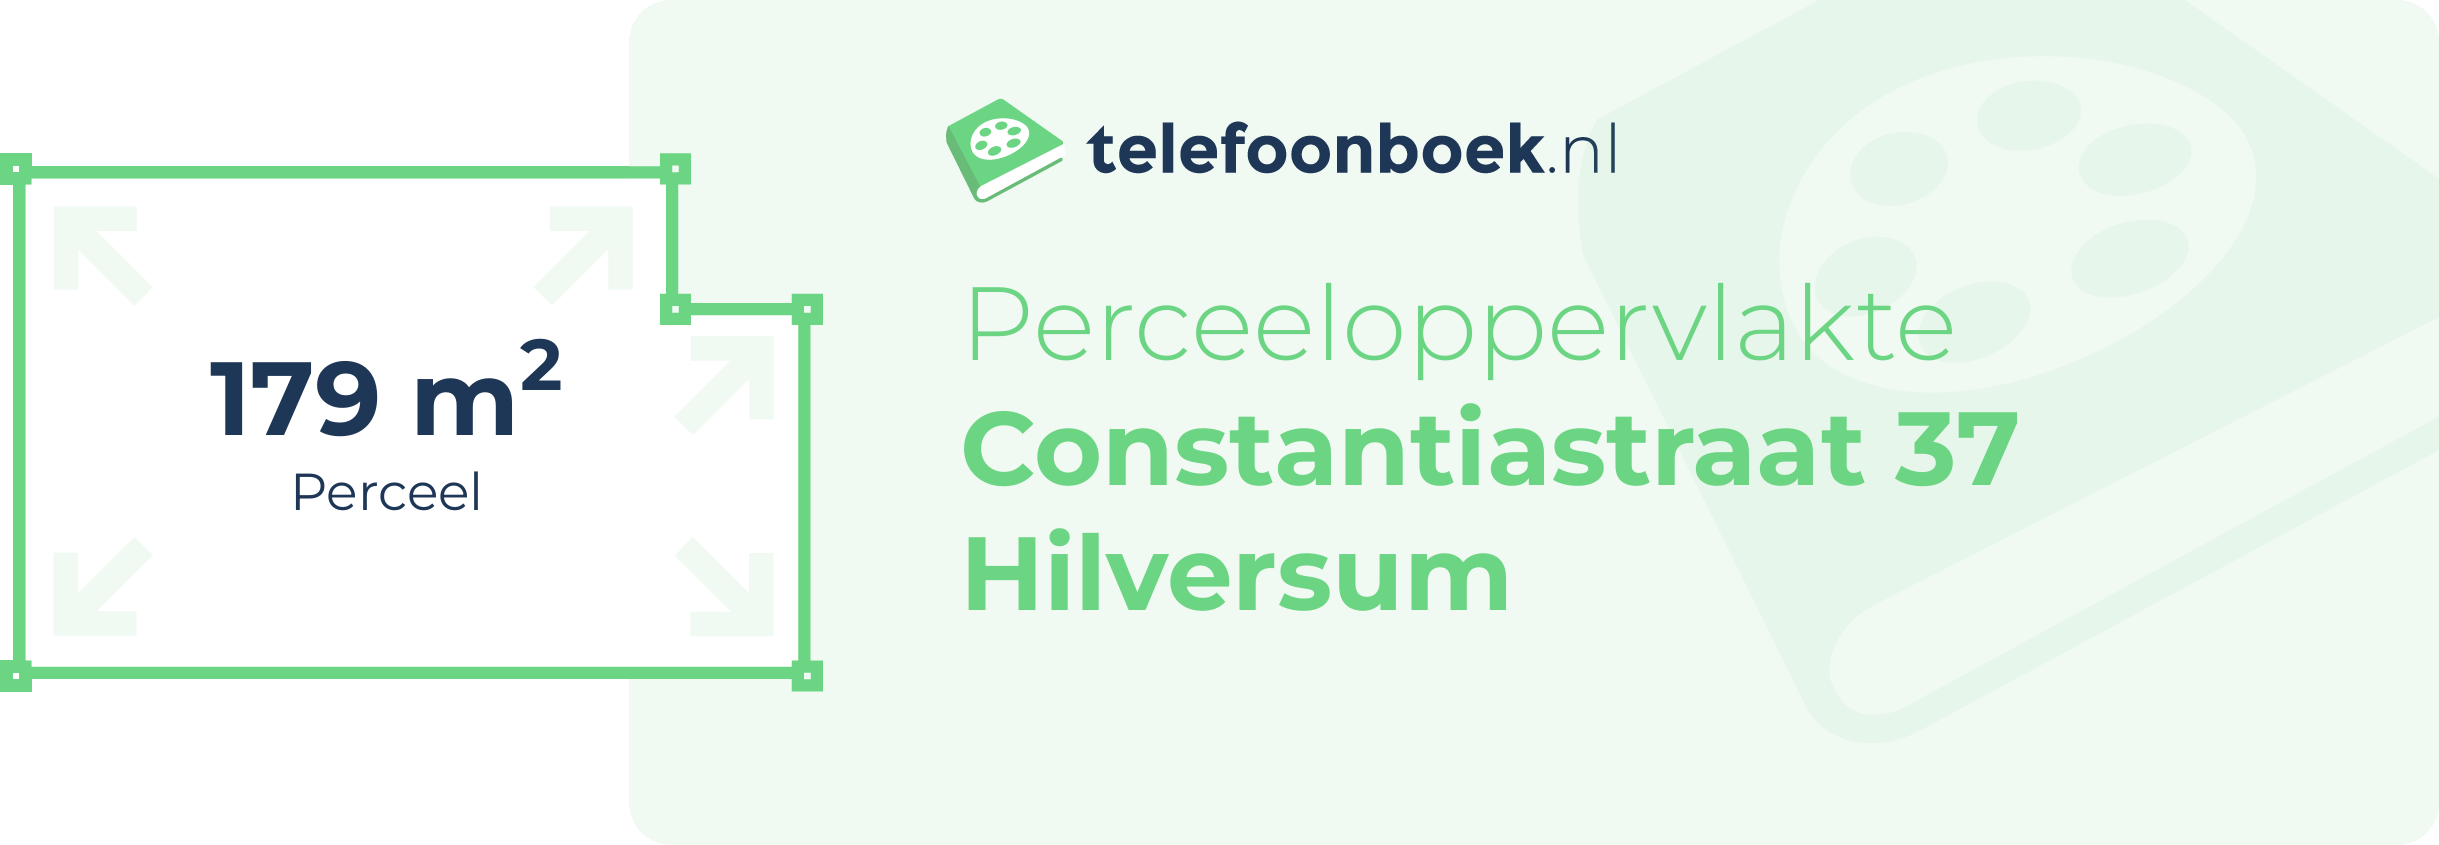 Perceeloppervlakte Constantiastraat 37 Hilversum